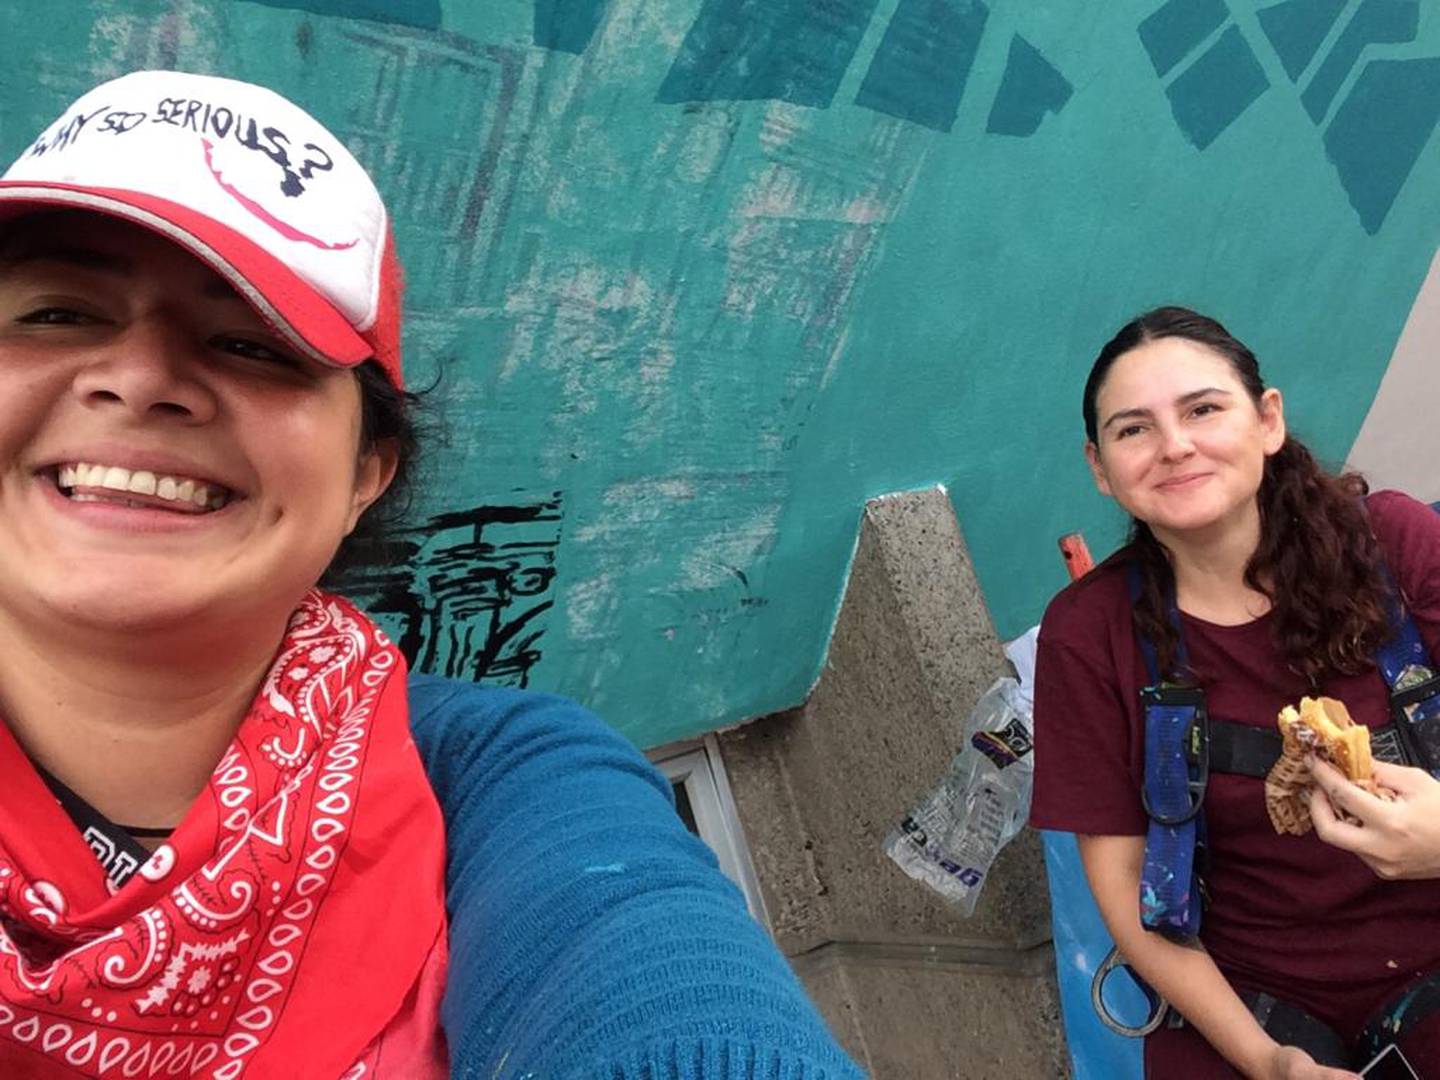 La artista costarricense, Carolina Rodríguez Herrera, está encargada de pintar lo mejor del San José de ayer y hoy en las paredes de la fachada del edificio Teresa que se ubica en barrio Amón. Le ayuda en la obra otra artista tica, Laura Chevez.